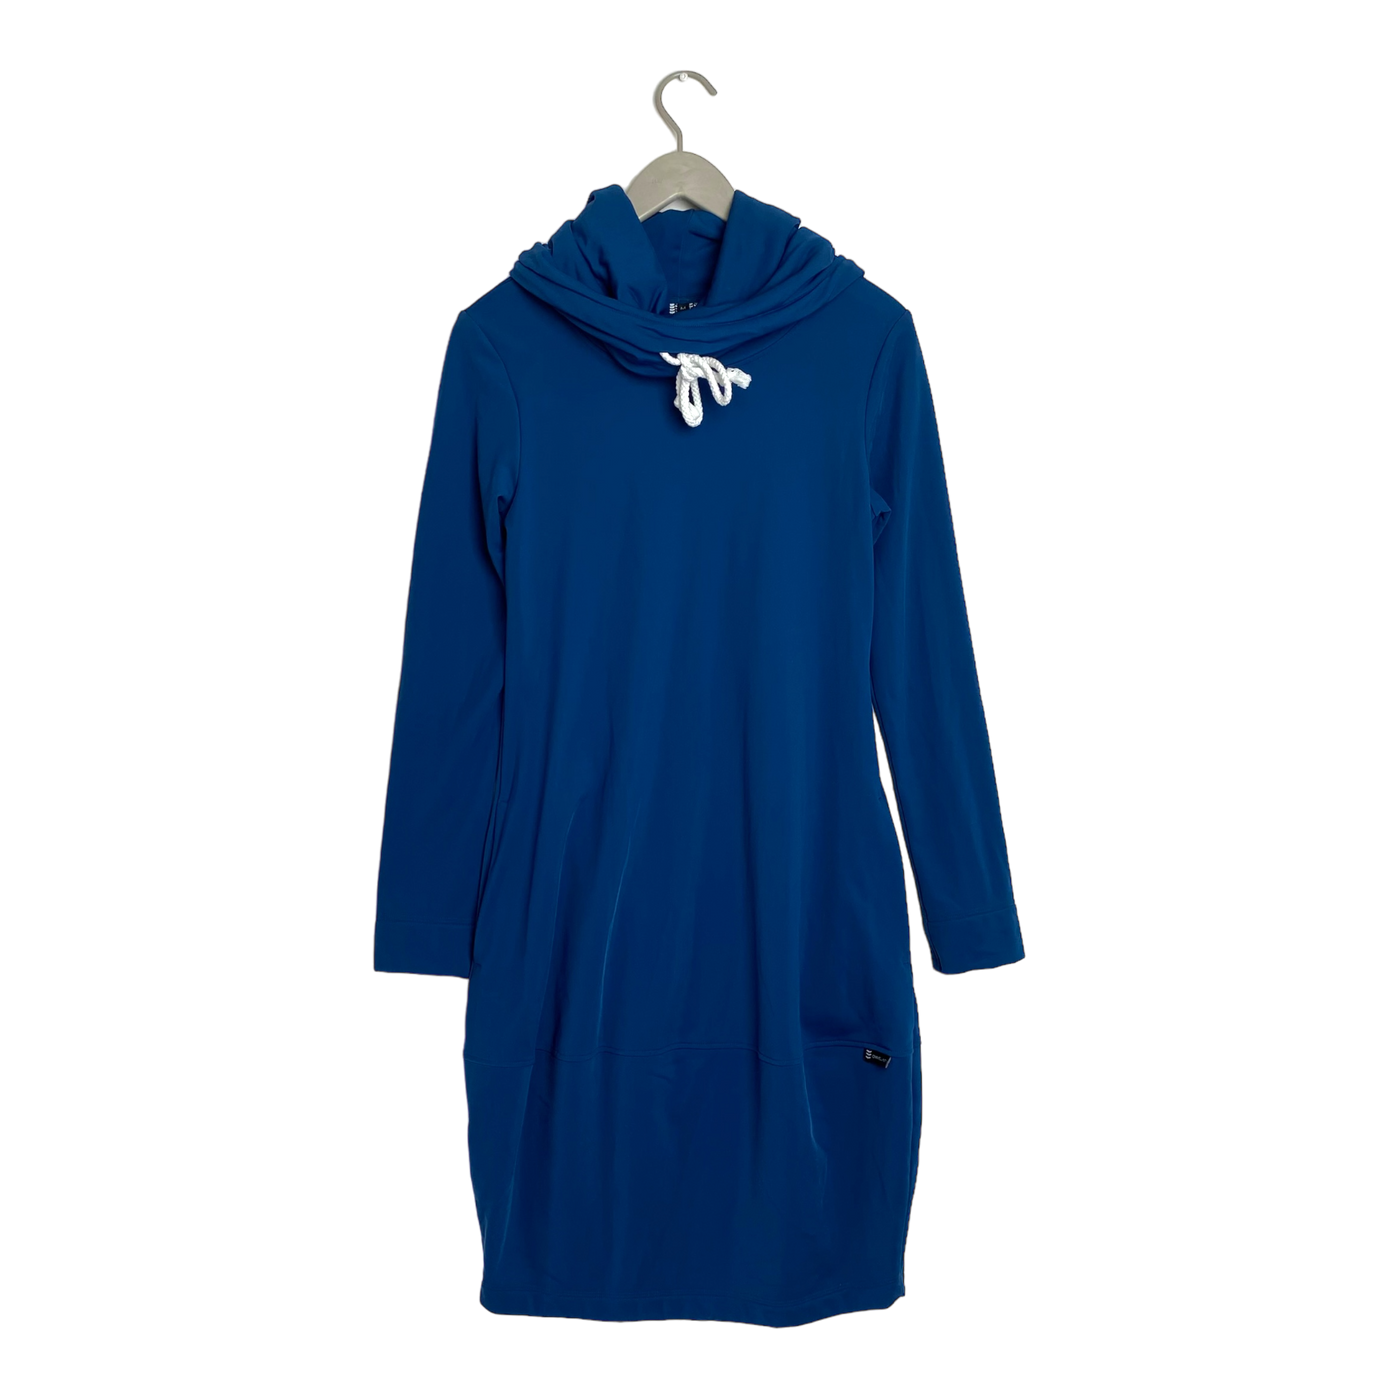 Ommellinen hoodie dress, blue | woman M